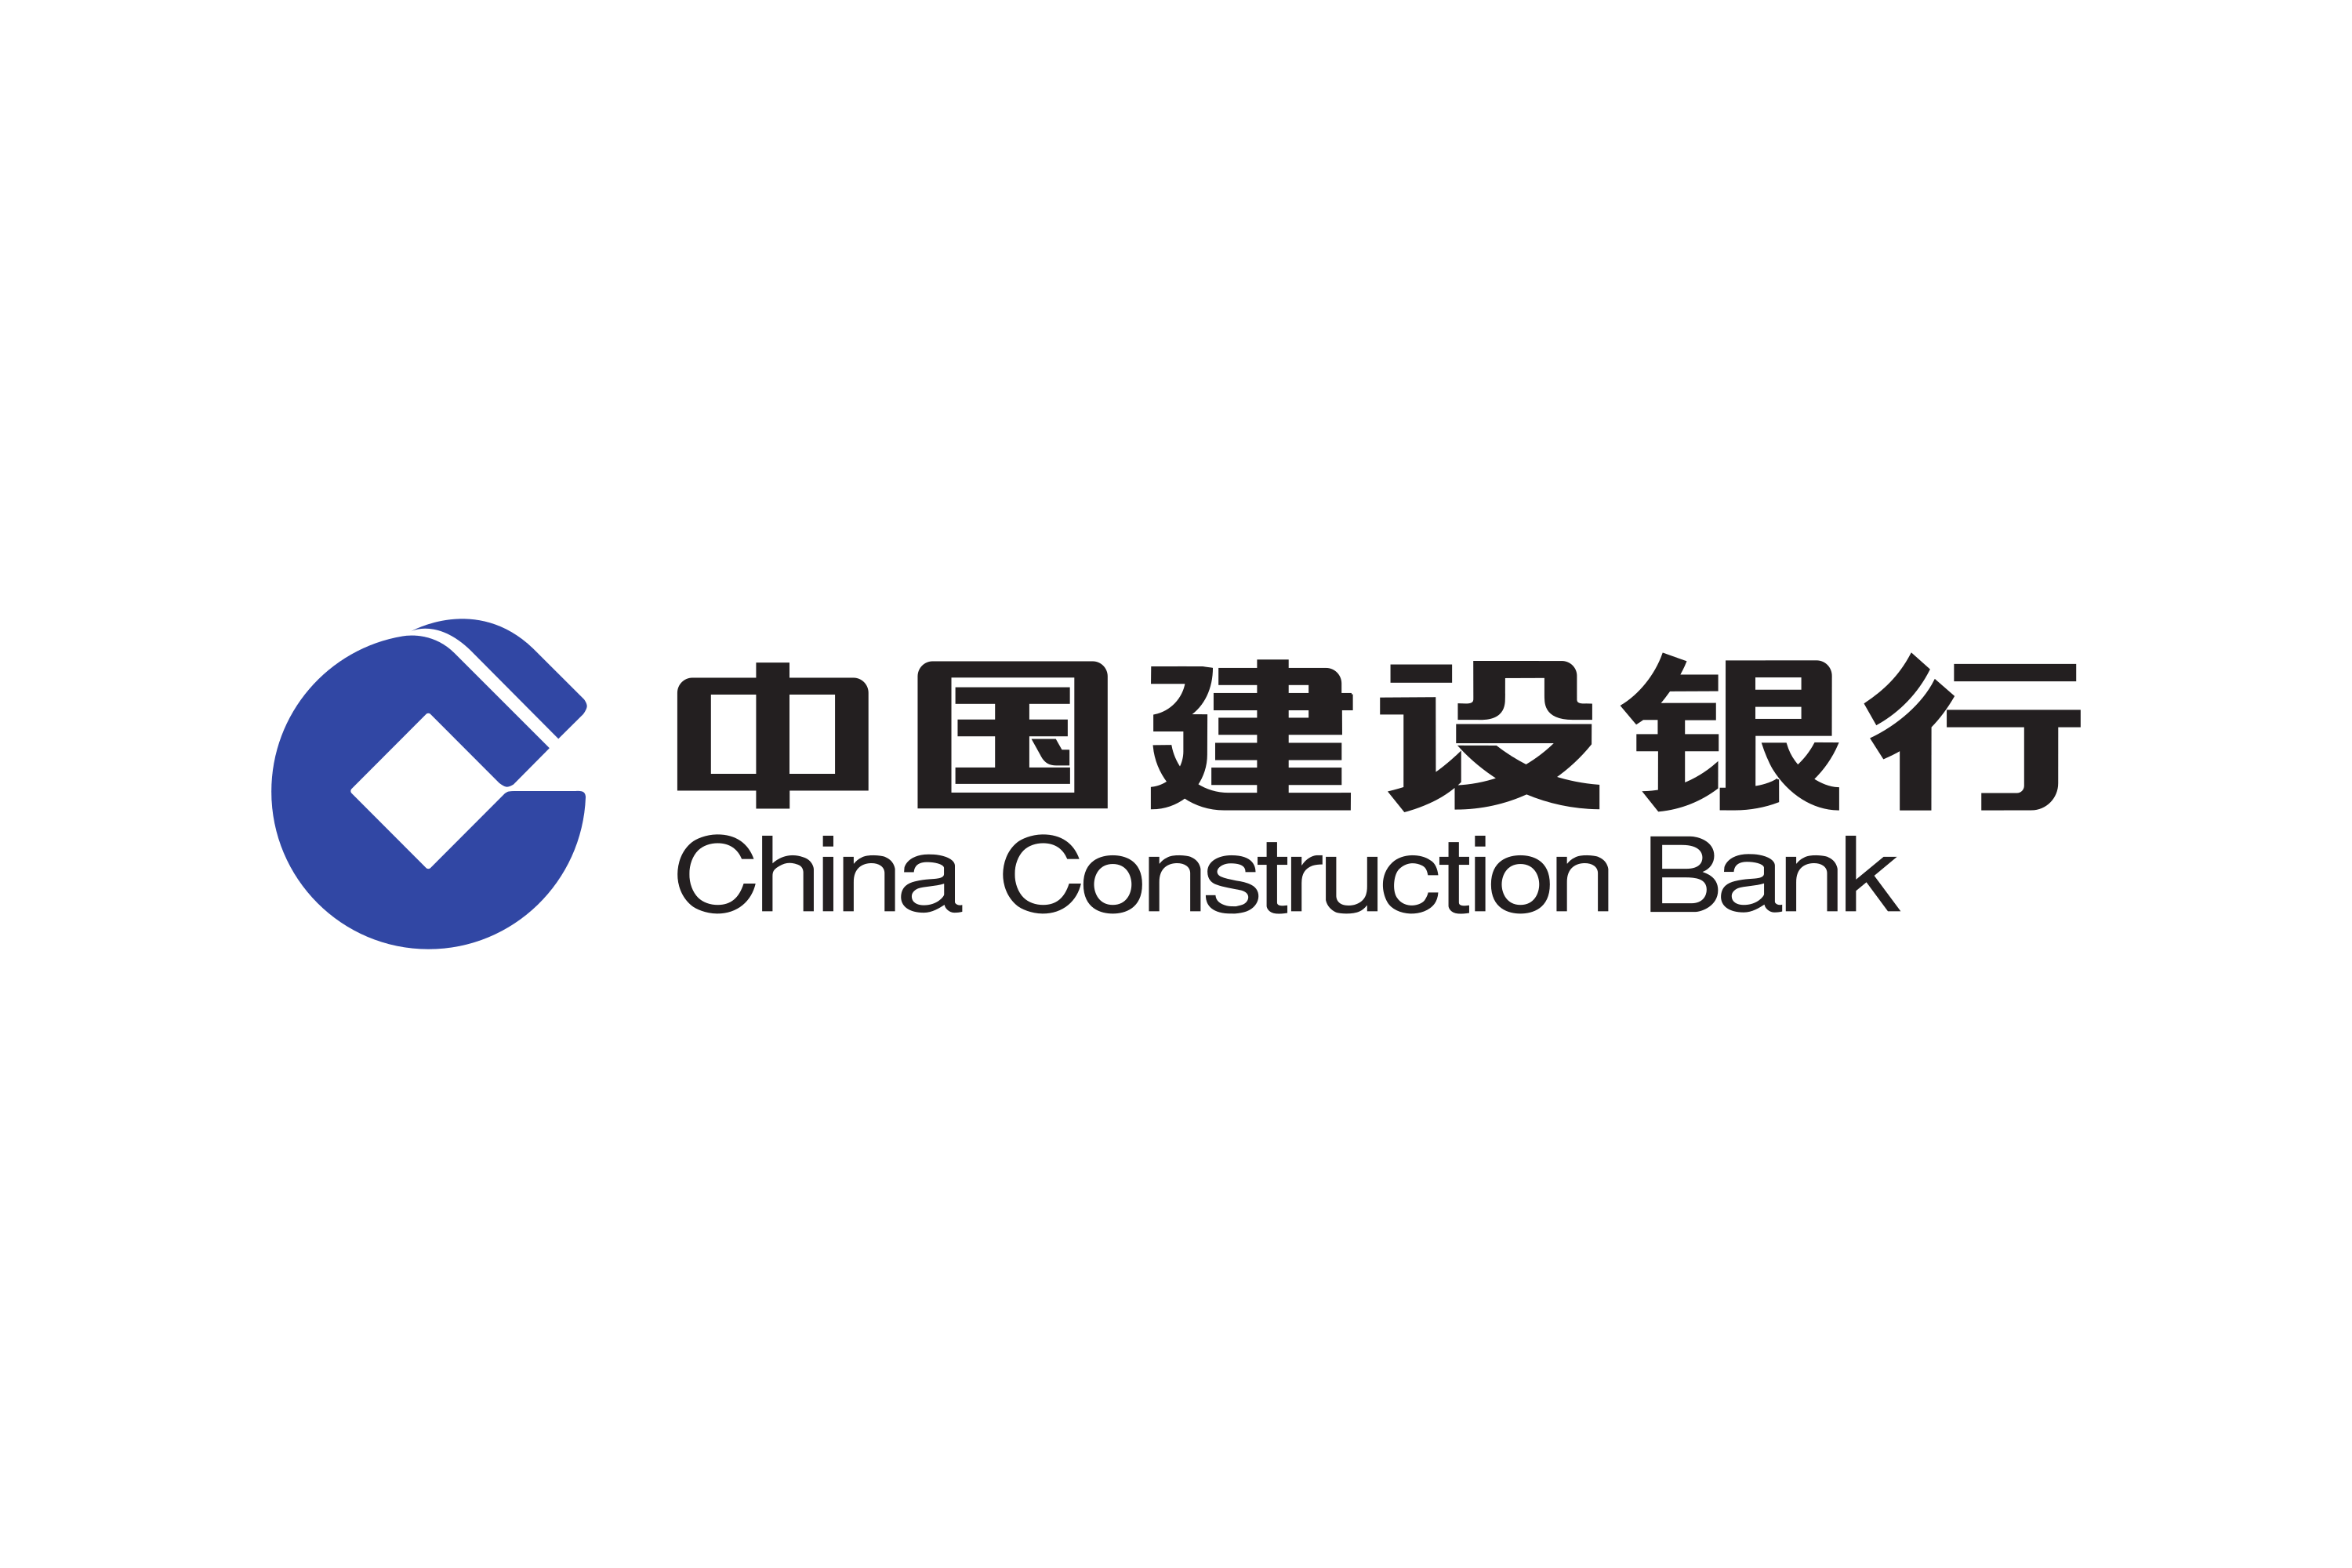 Сайт банка китая. Строительный банк Китая China Construction Bank CCB. China Construction Bank logo. Логотип китайского строительного банка. China Construction Bank (ССВ) ("строительный банк Китая").